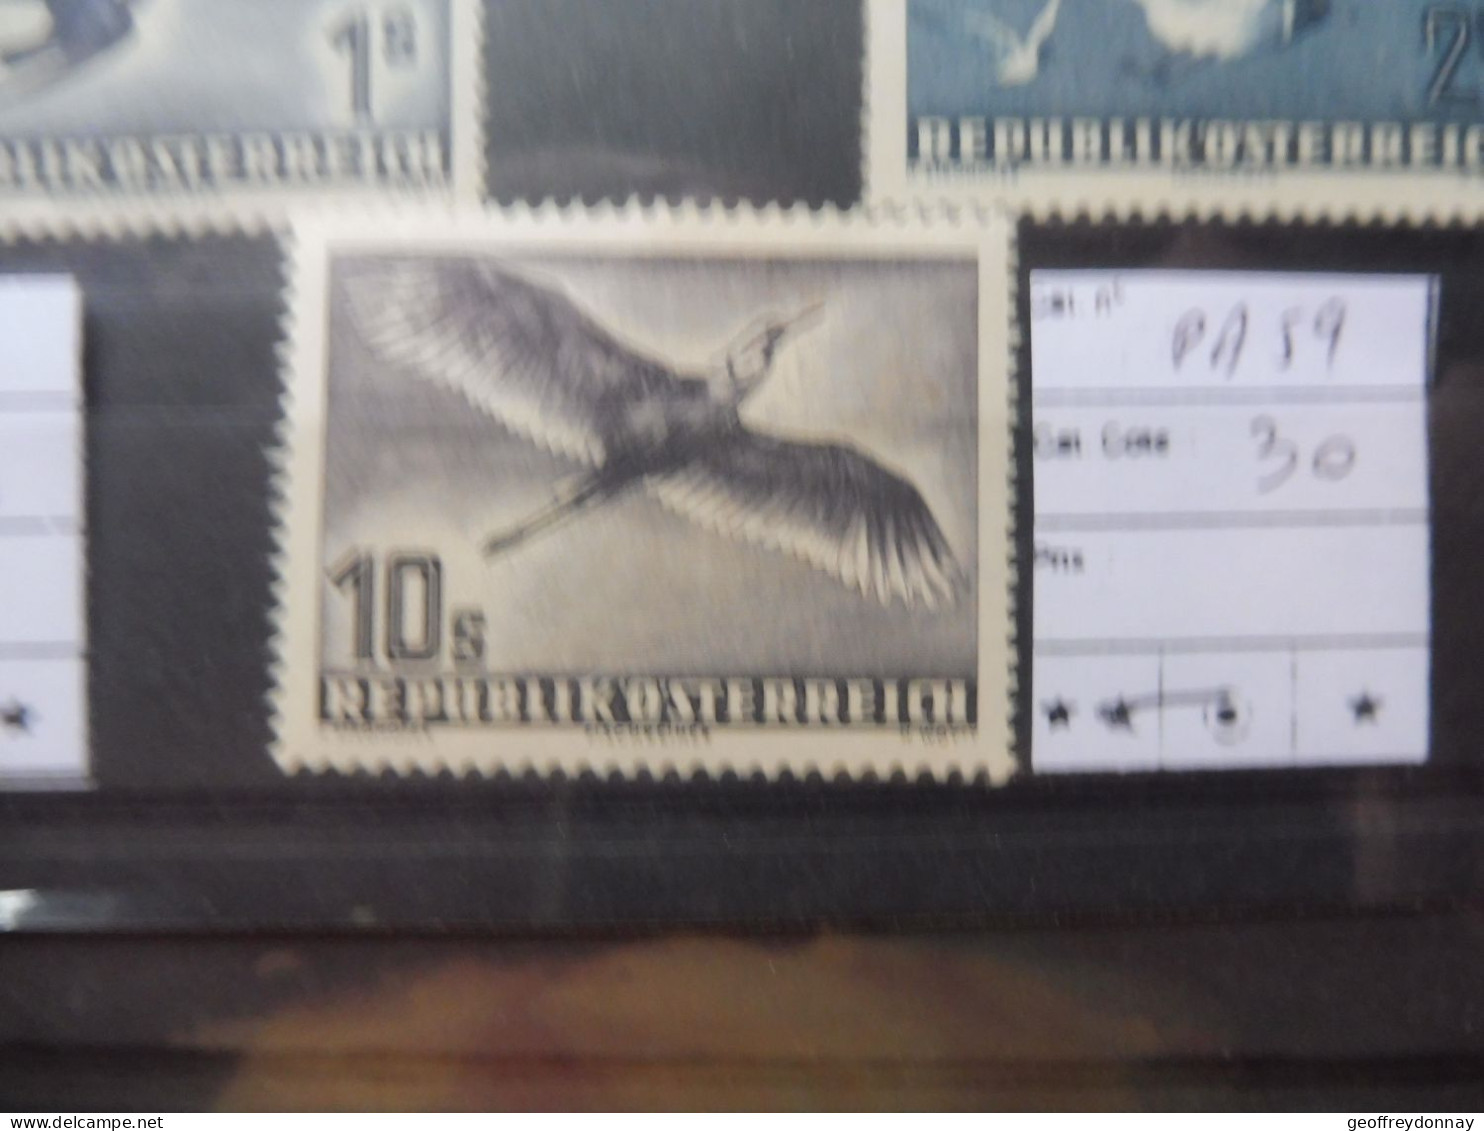 Autriche Osterreich Austria Pa Poste Aerienne 59  Mh Neuf * Plakken Perfect Parfait Etat Perfect Oiseaux Vogels Birds - Nuevos